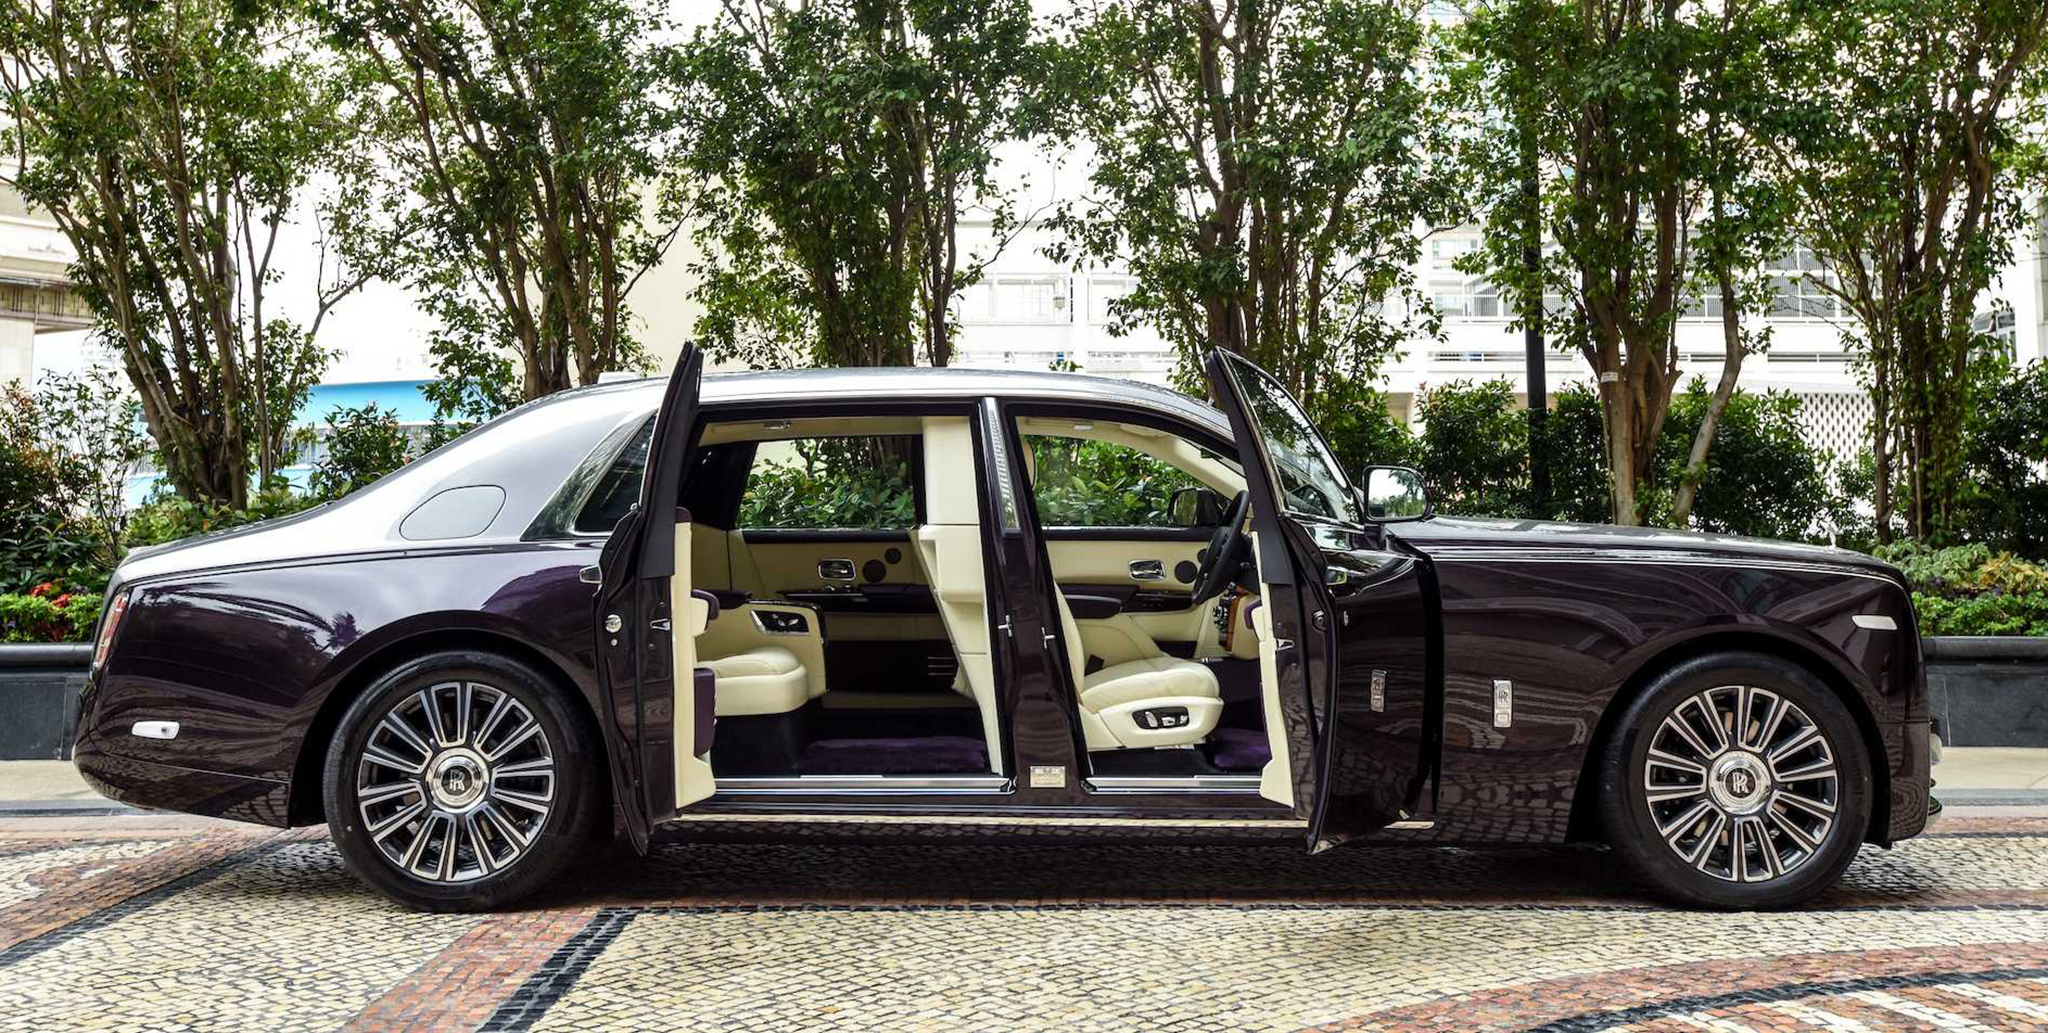 Khám phá Rolls-Royce Phantom với vách ngăn riêng tư ở hàng ghế sau